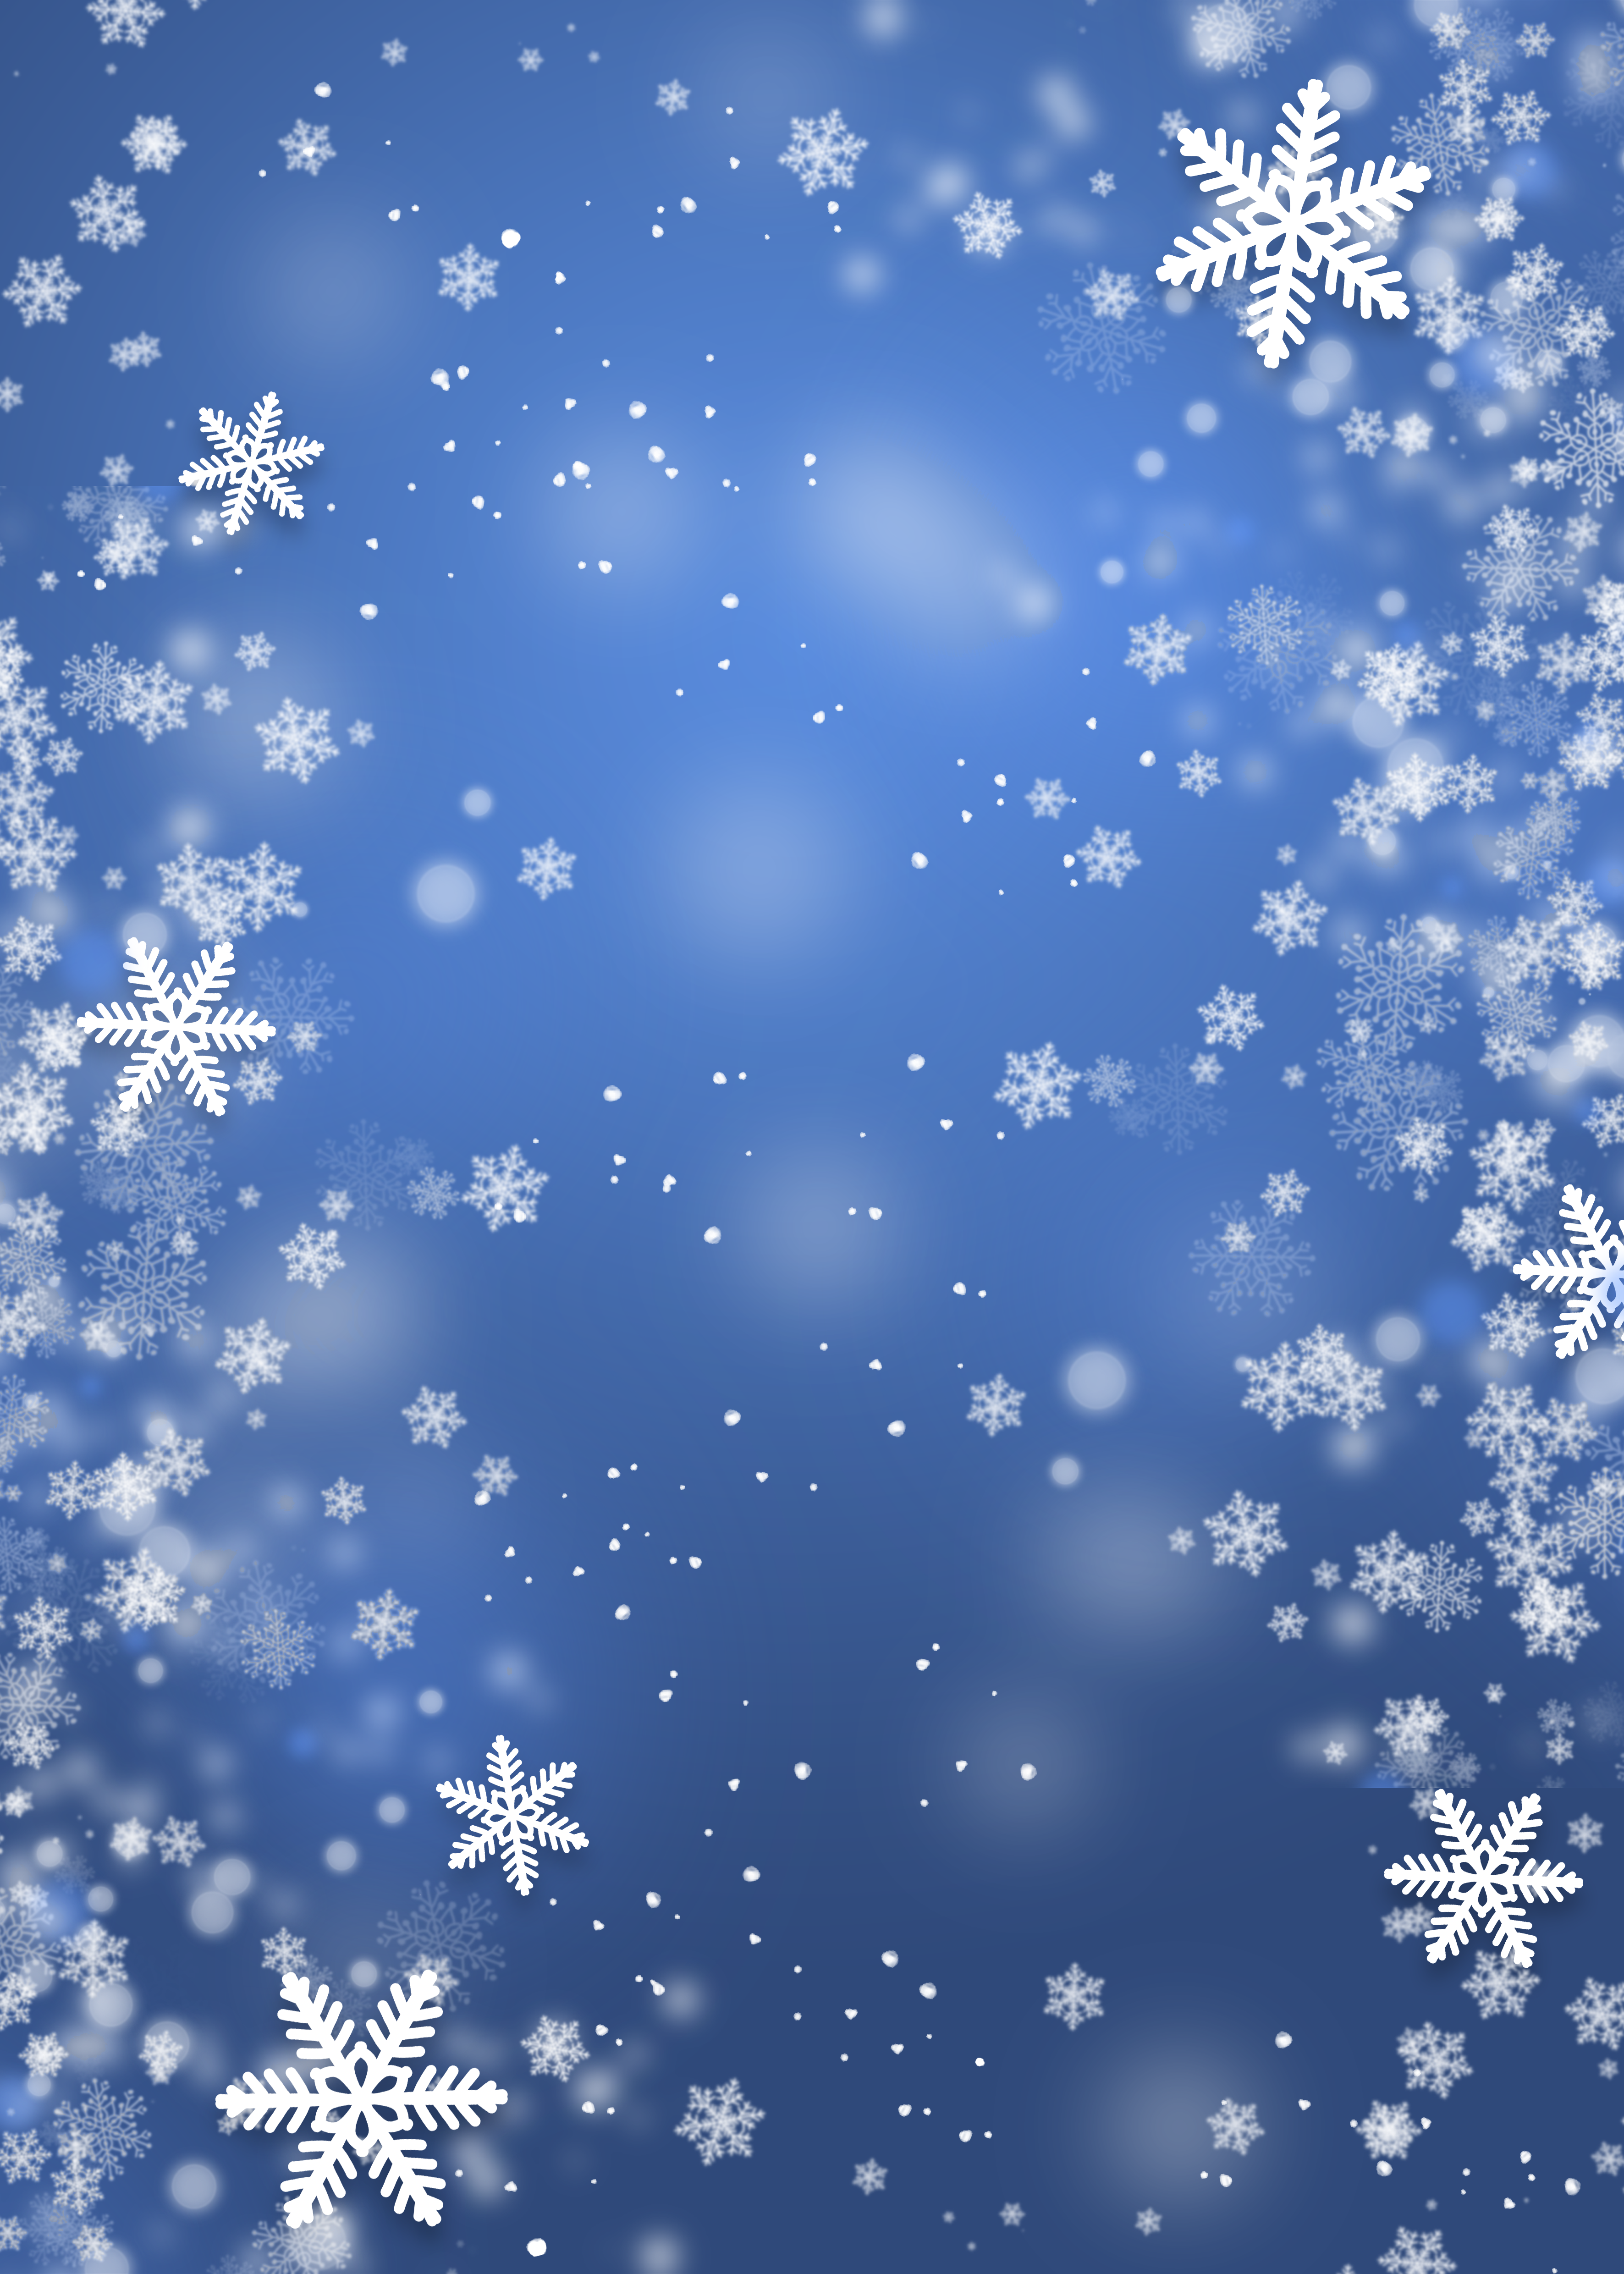 雪花抽象光影雪片蓝色质感背景图片